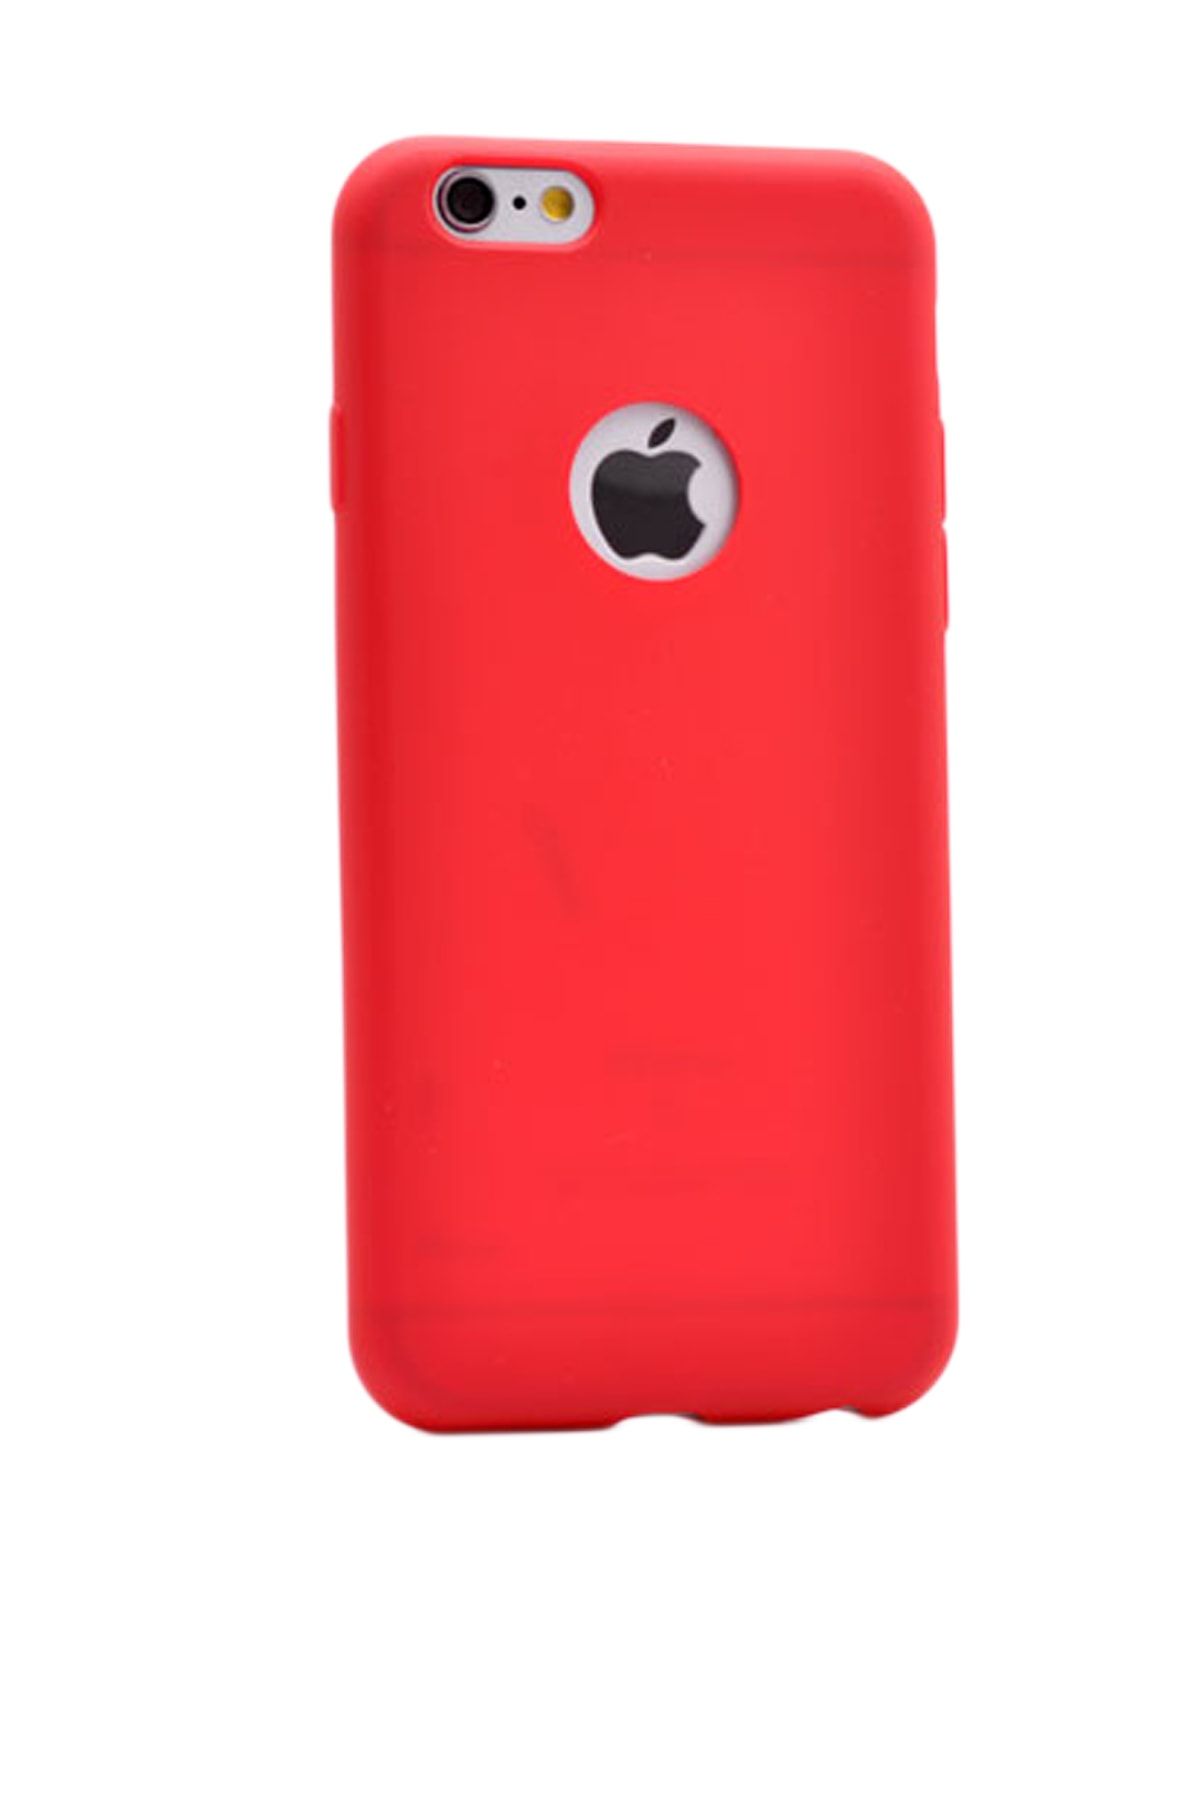 Elfia Iphone 4 Kılıf Renkli Silikon Koruma Kapak